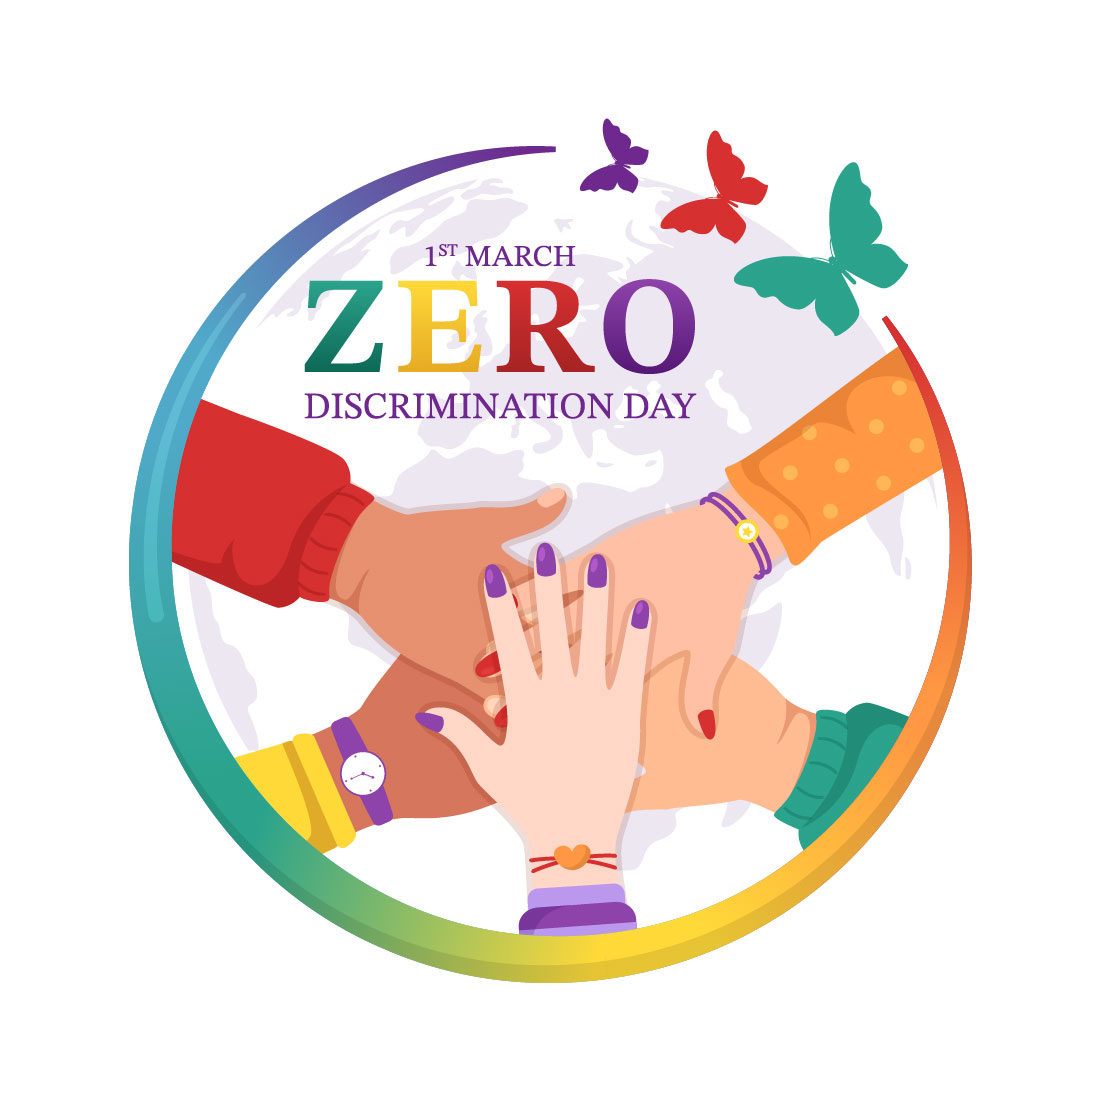 12 Zero Discrimination Day Illustration cover image.